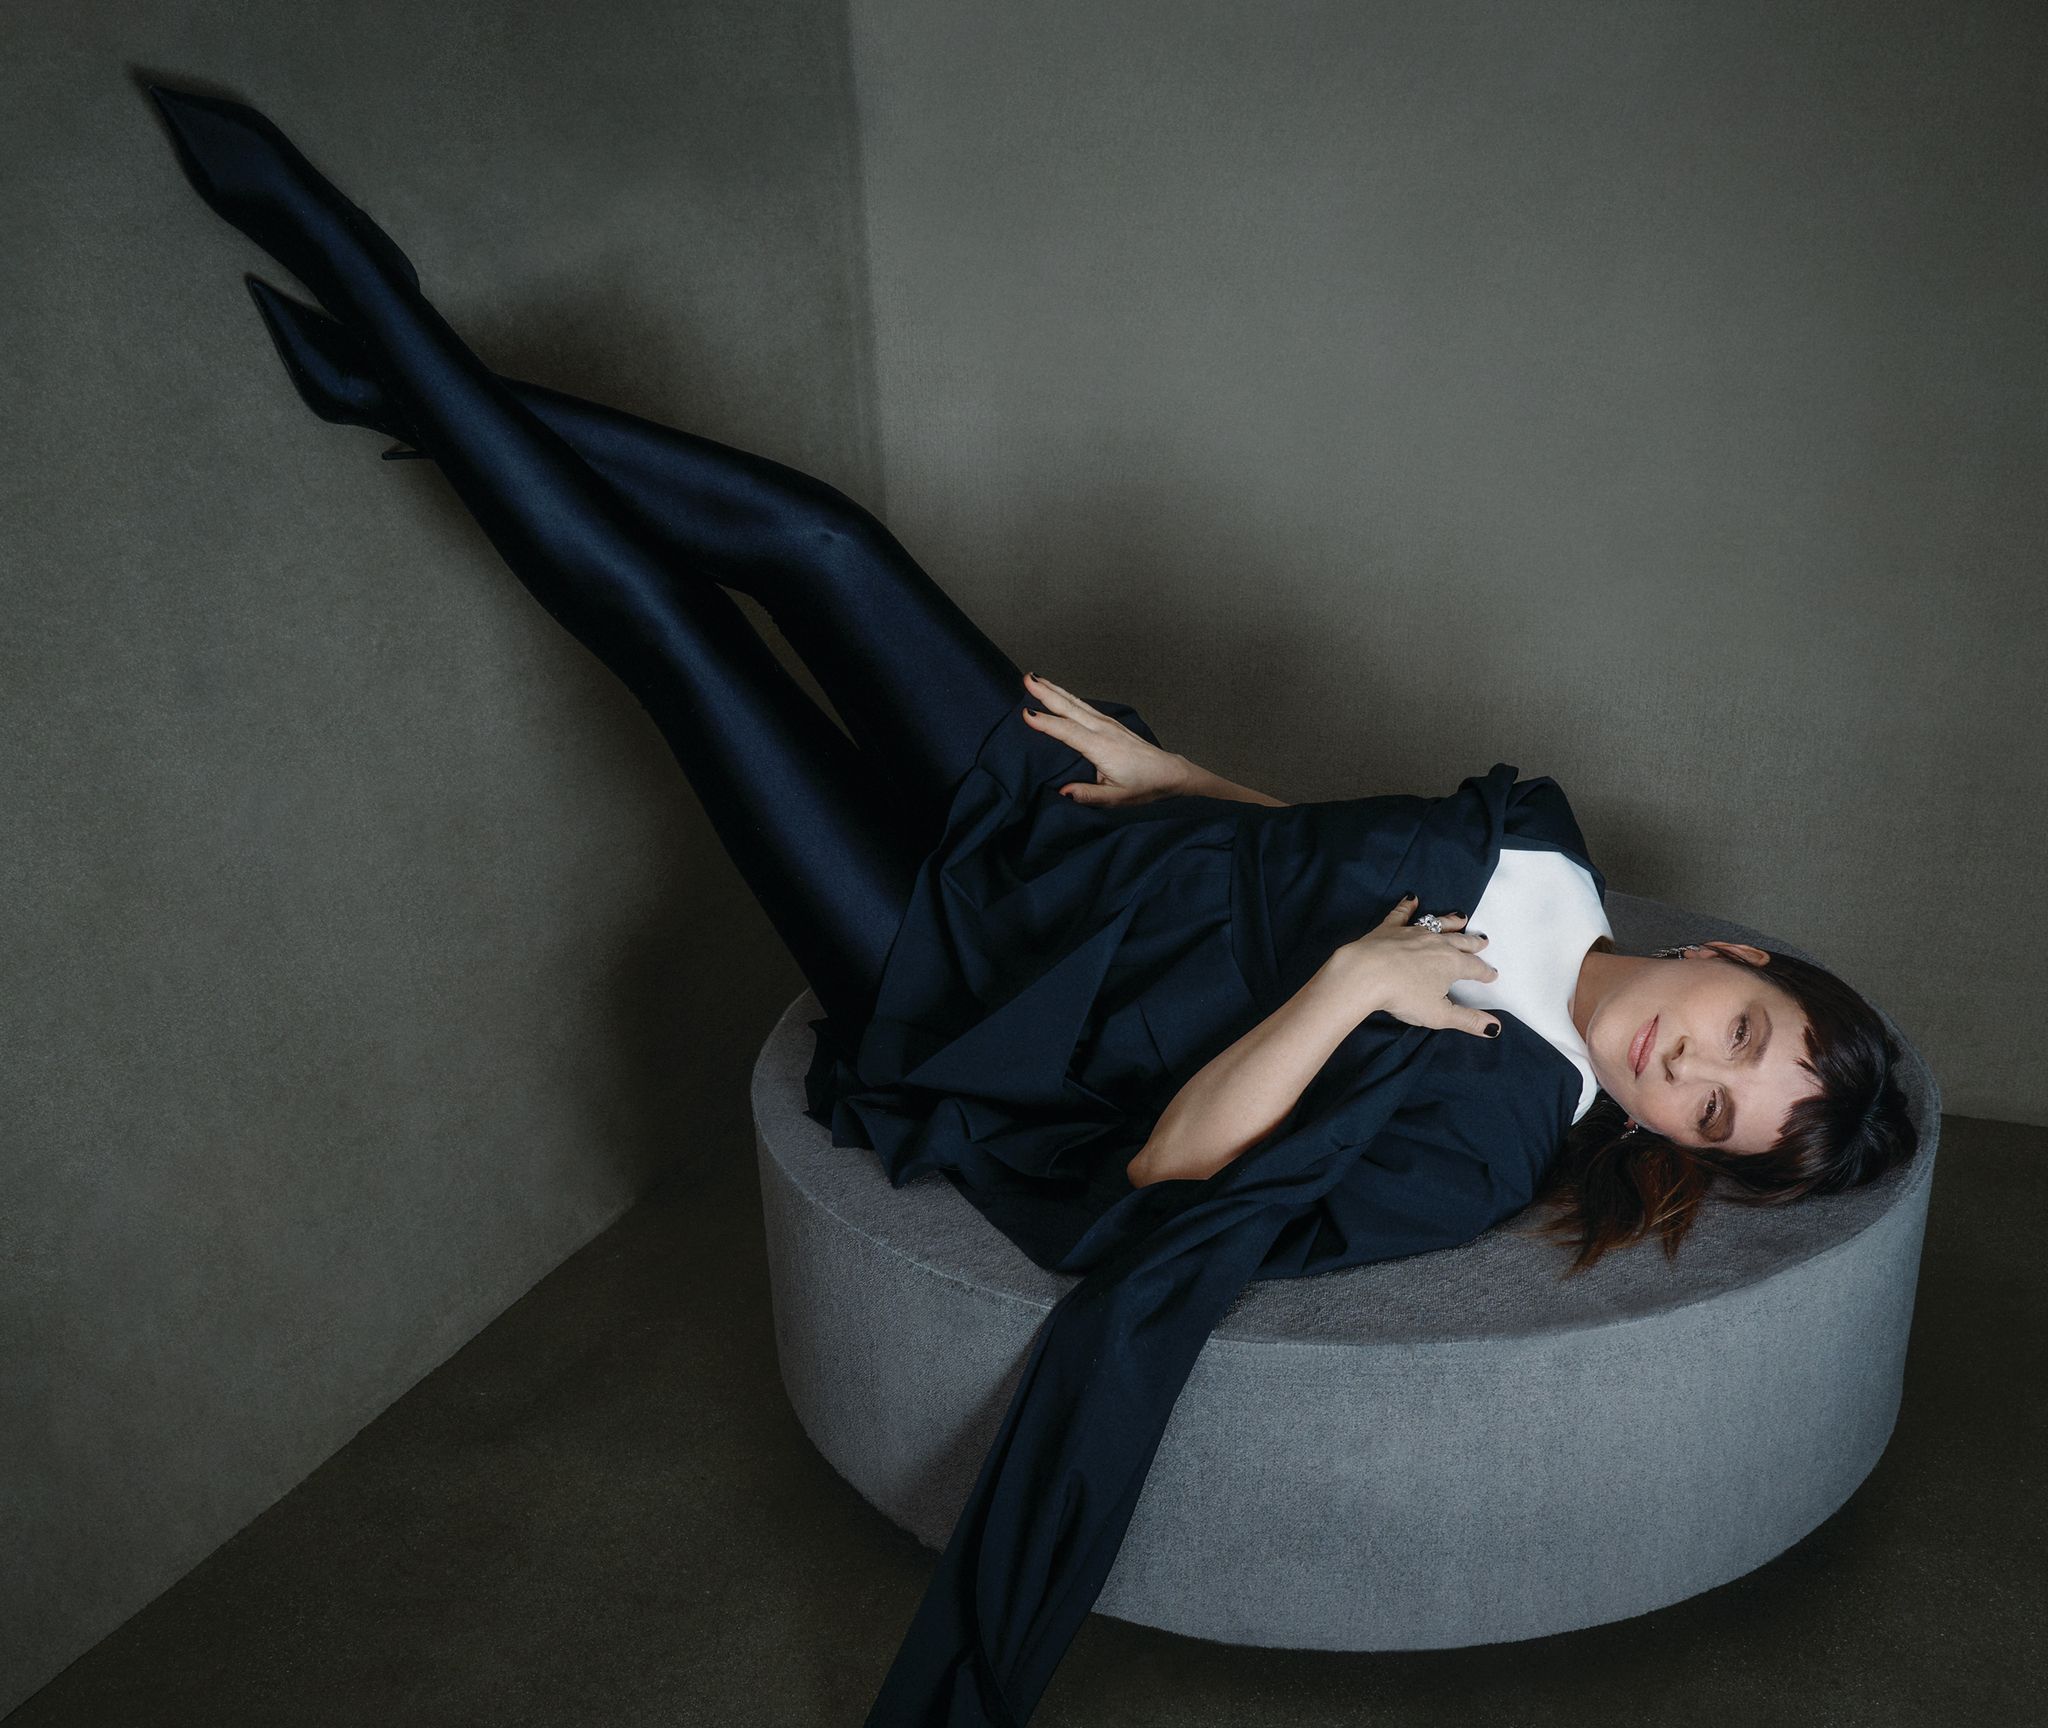 The New Look' Review: Juliette Binoche Is Coco Chanel in Apple Drama